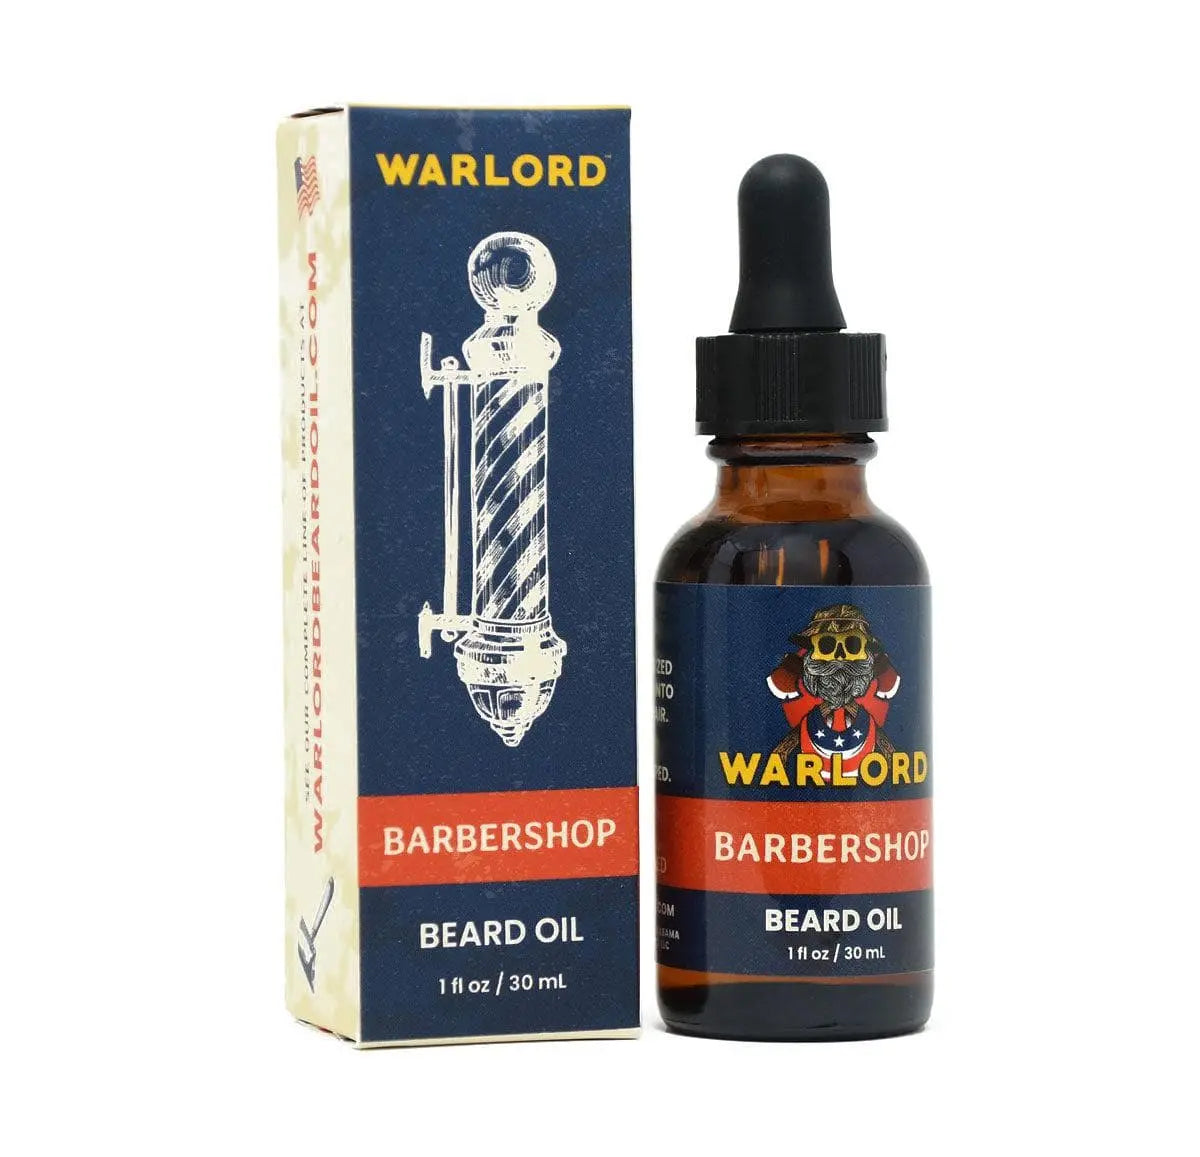 Warlord's Barbershop Beard Oil